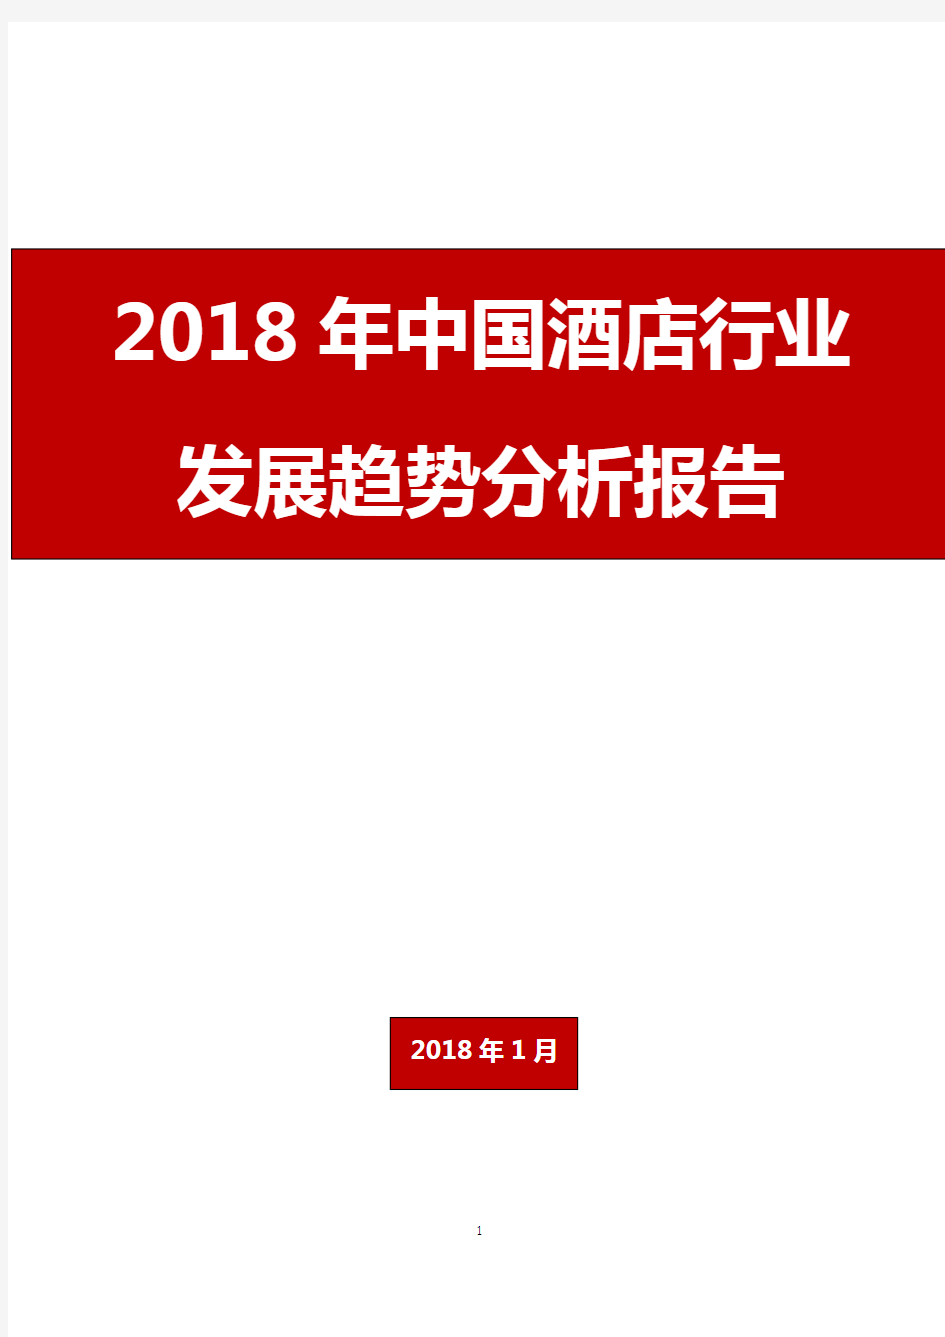 2018年中国酒店行业发展趋势分析报告